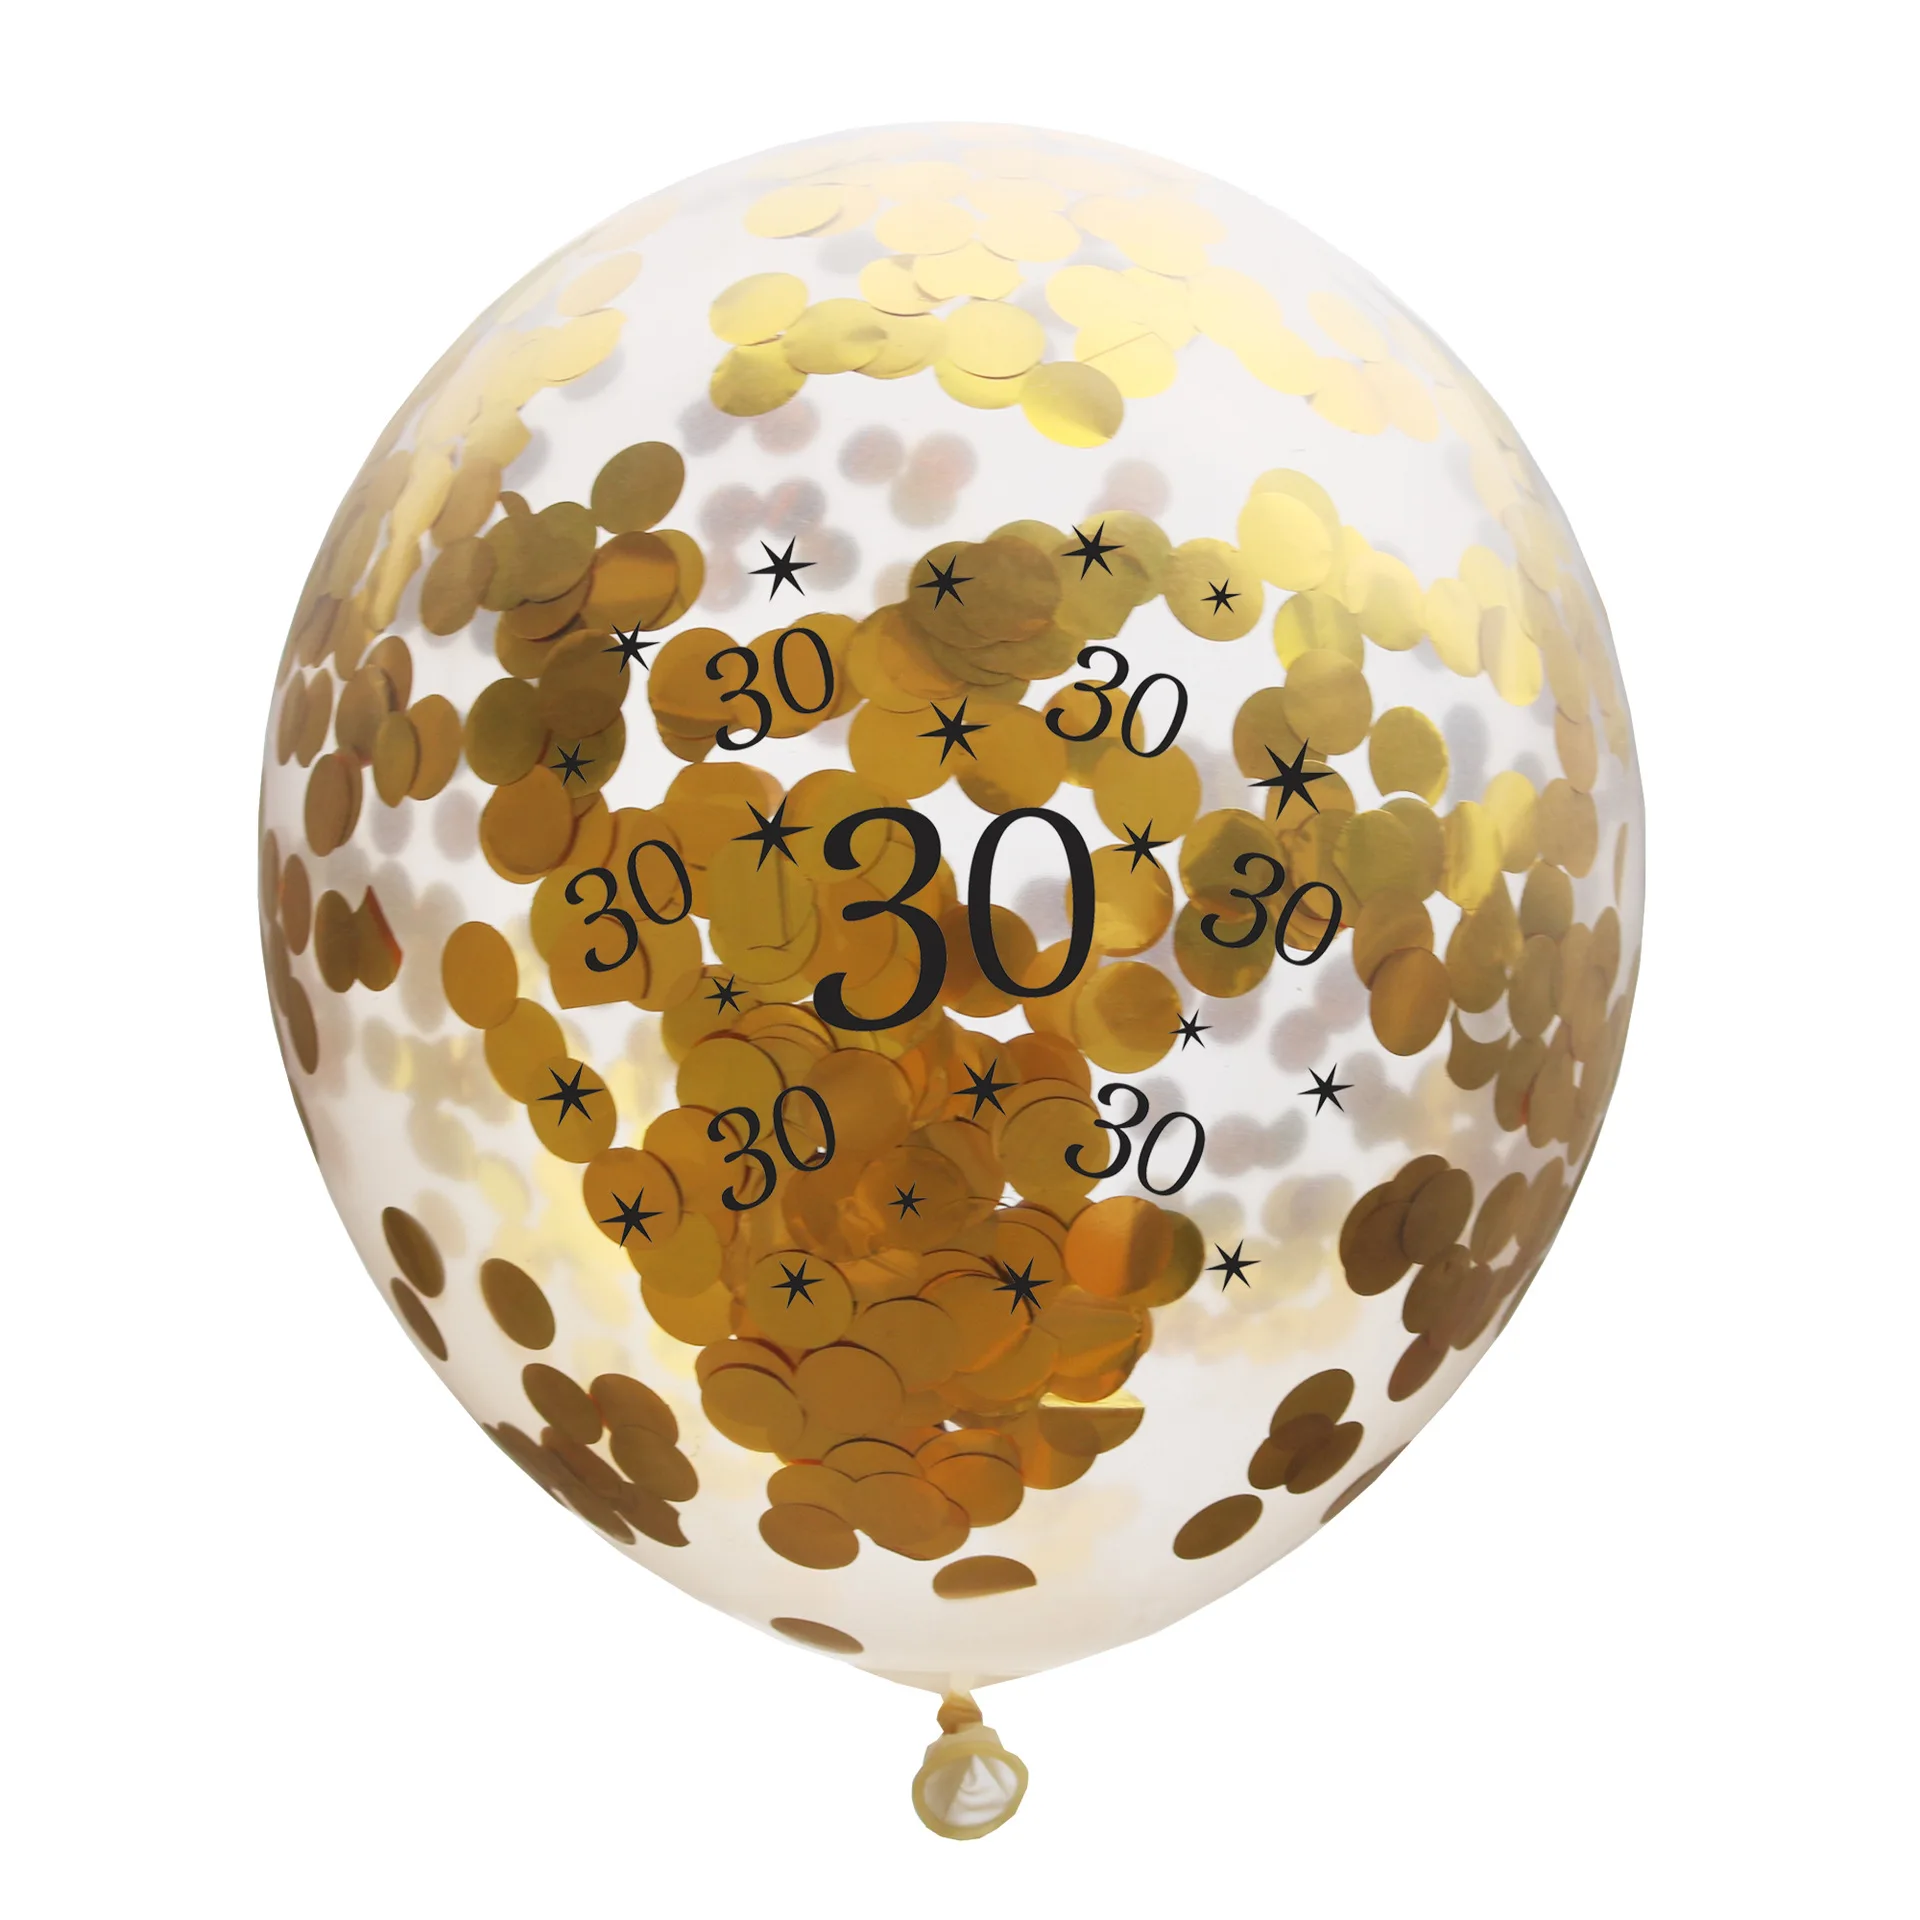 5 шт. 30th 40th 50th 60th 70th 80th с днем рождения прозрачный конфетти латексные шары юбилей день рождения украшения поставки - Цвет: 30 gold